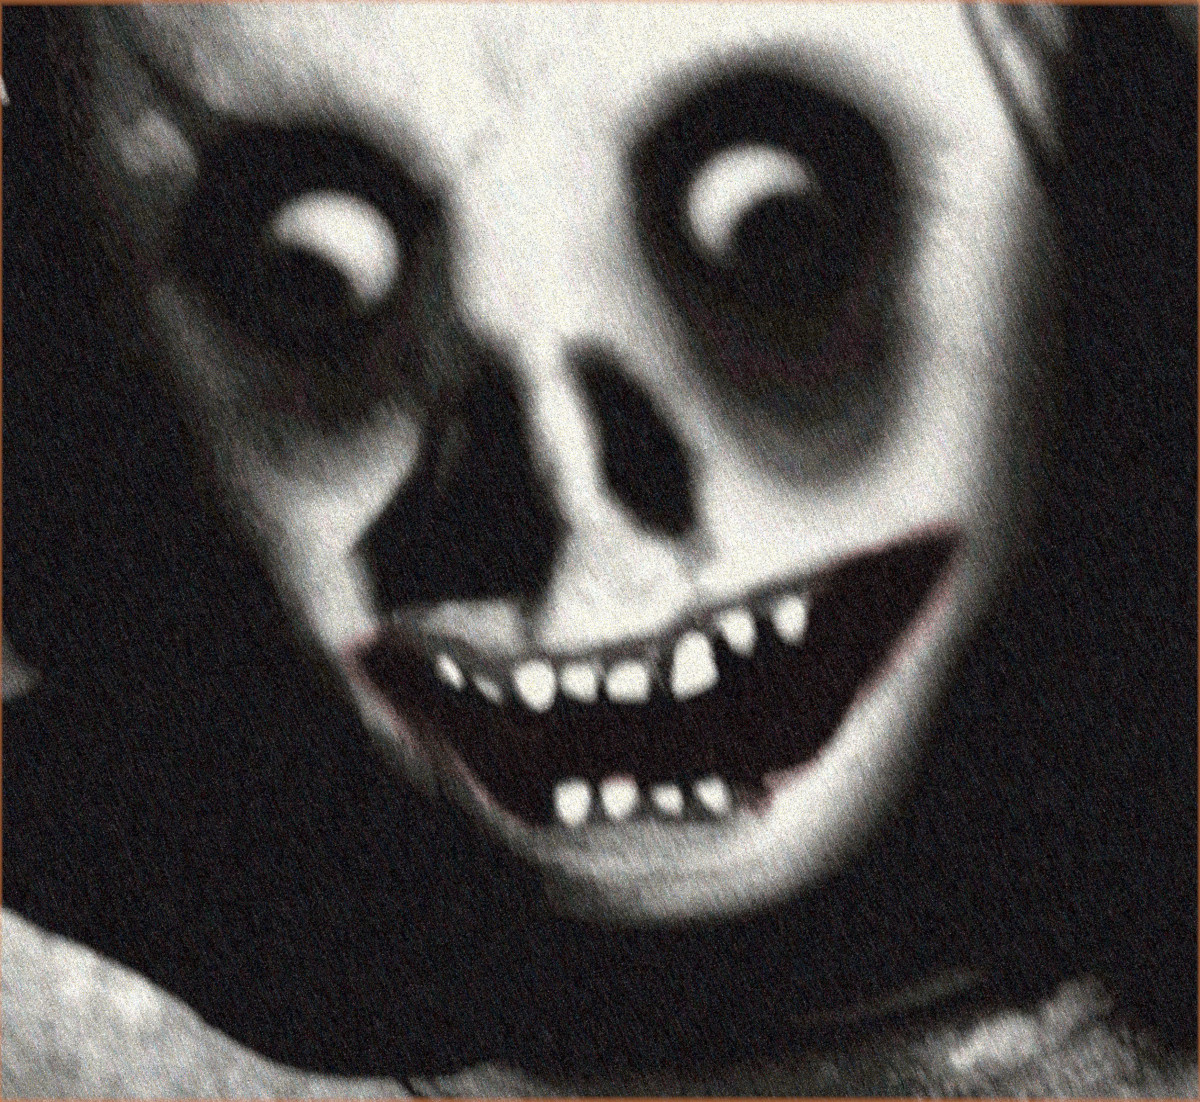 the creepy face - Roblox